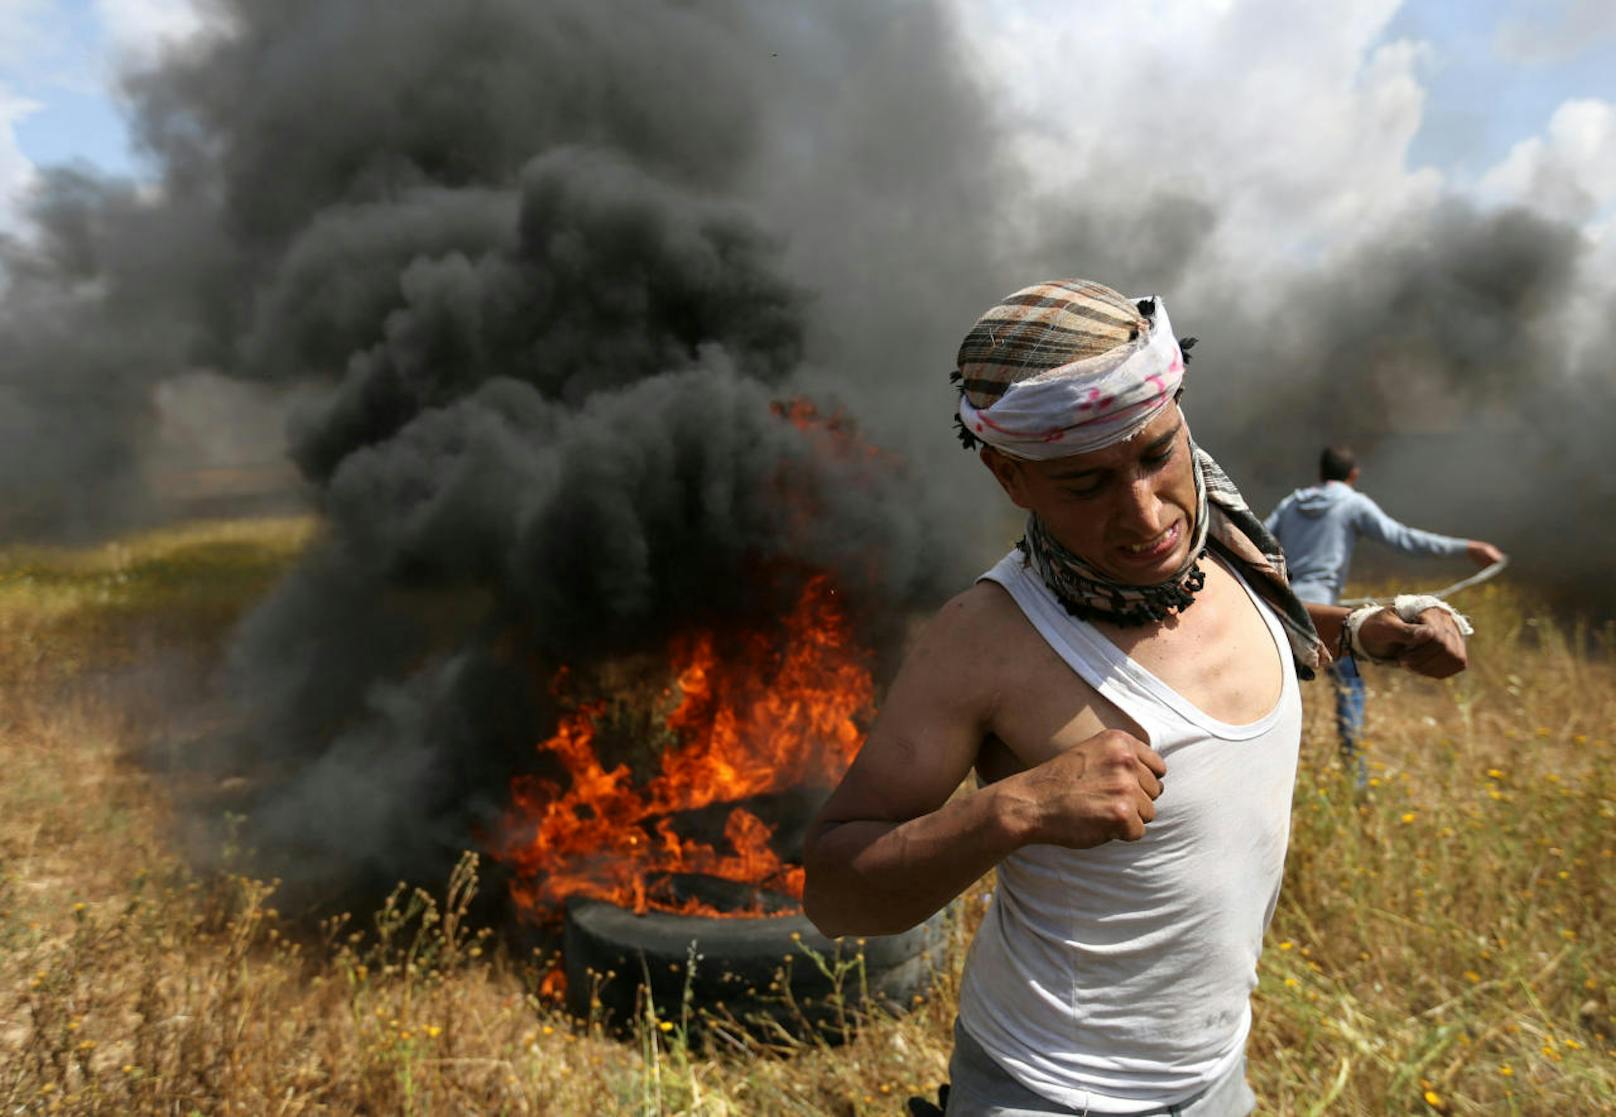 Sie reagierten nach eigenen Angaben auf brennende Reifen, Steinwürfe und Brandbomben von palästinensischer Seite.